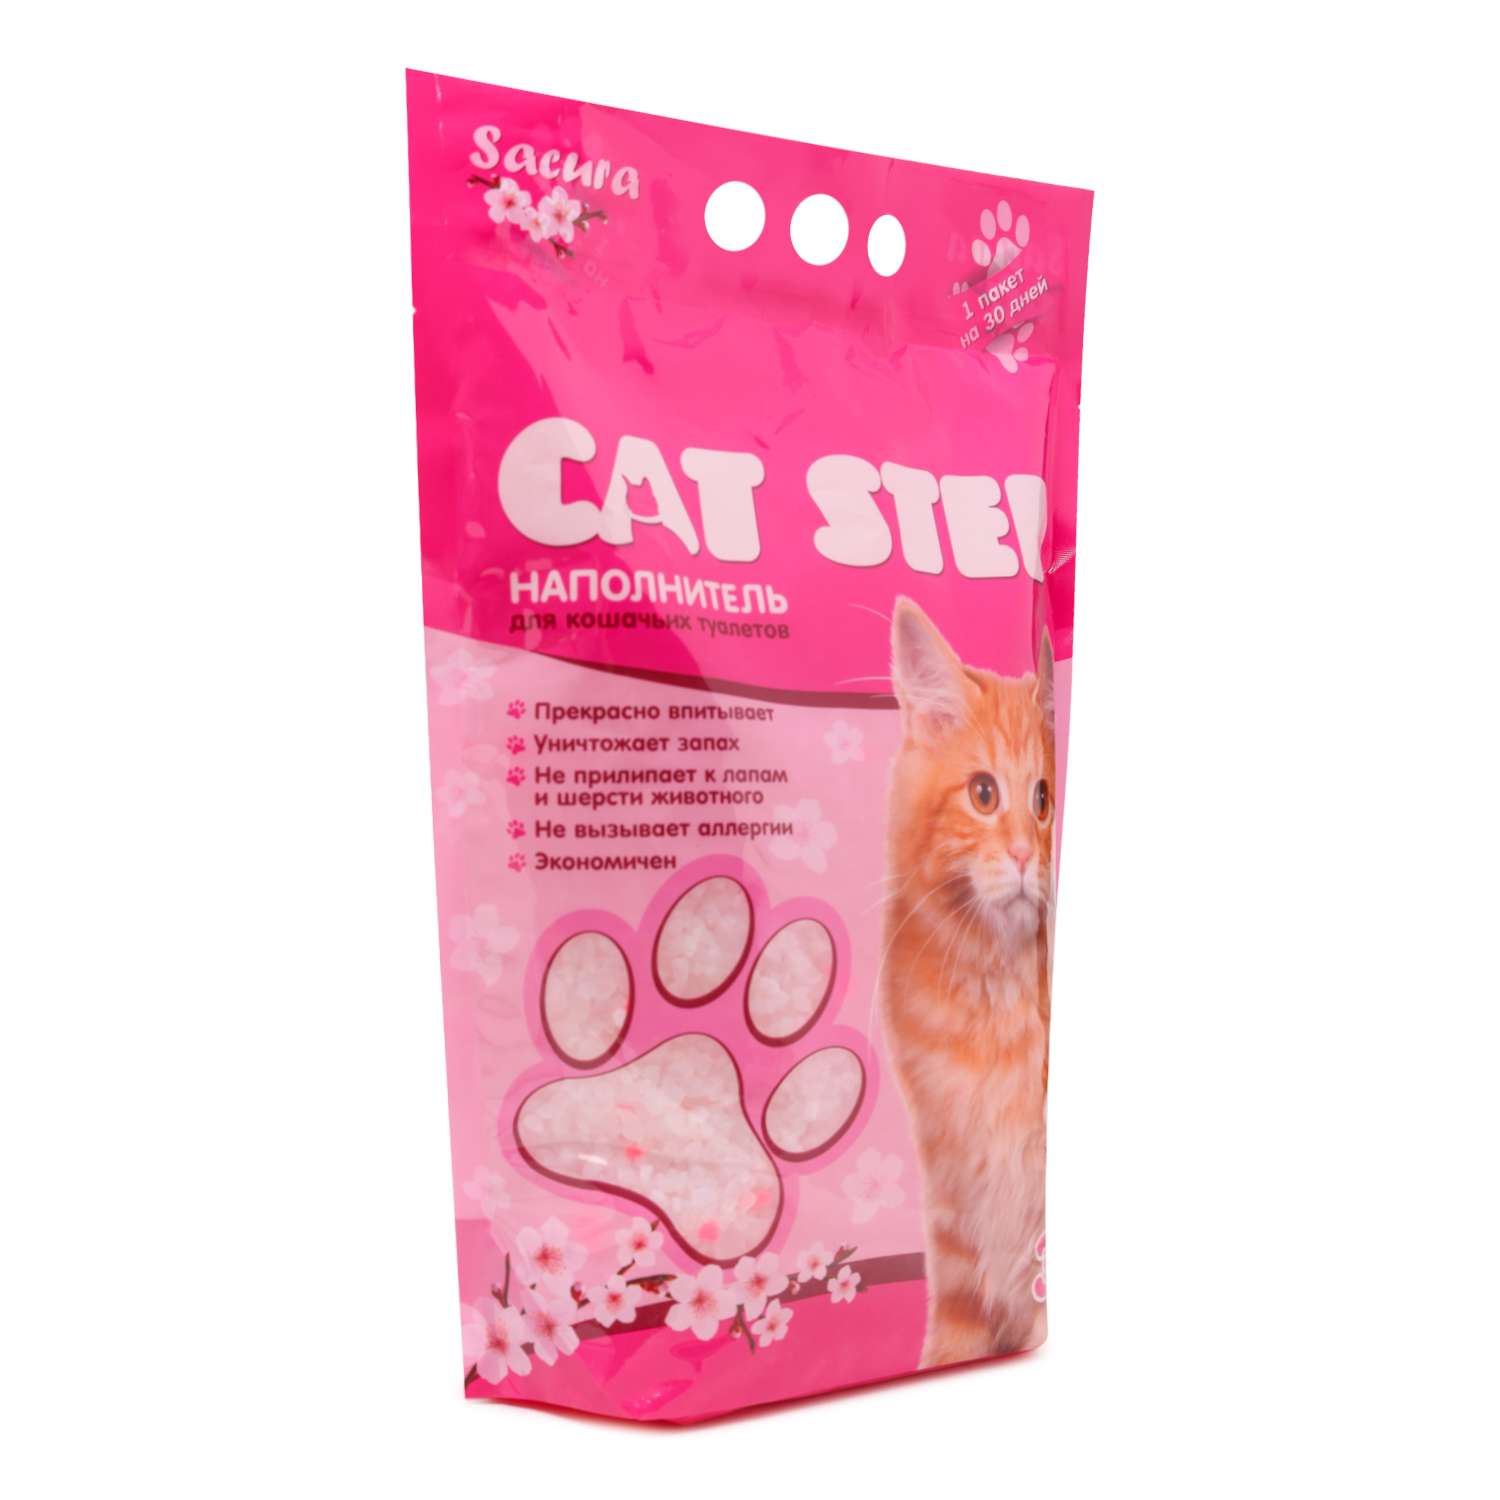 Наполнитель для кошек Cat Step силикагелевый Сакура 3.8 л - фото 1